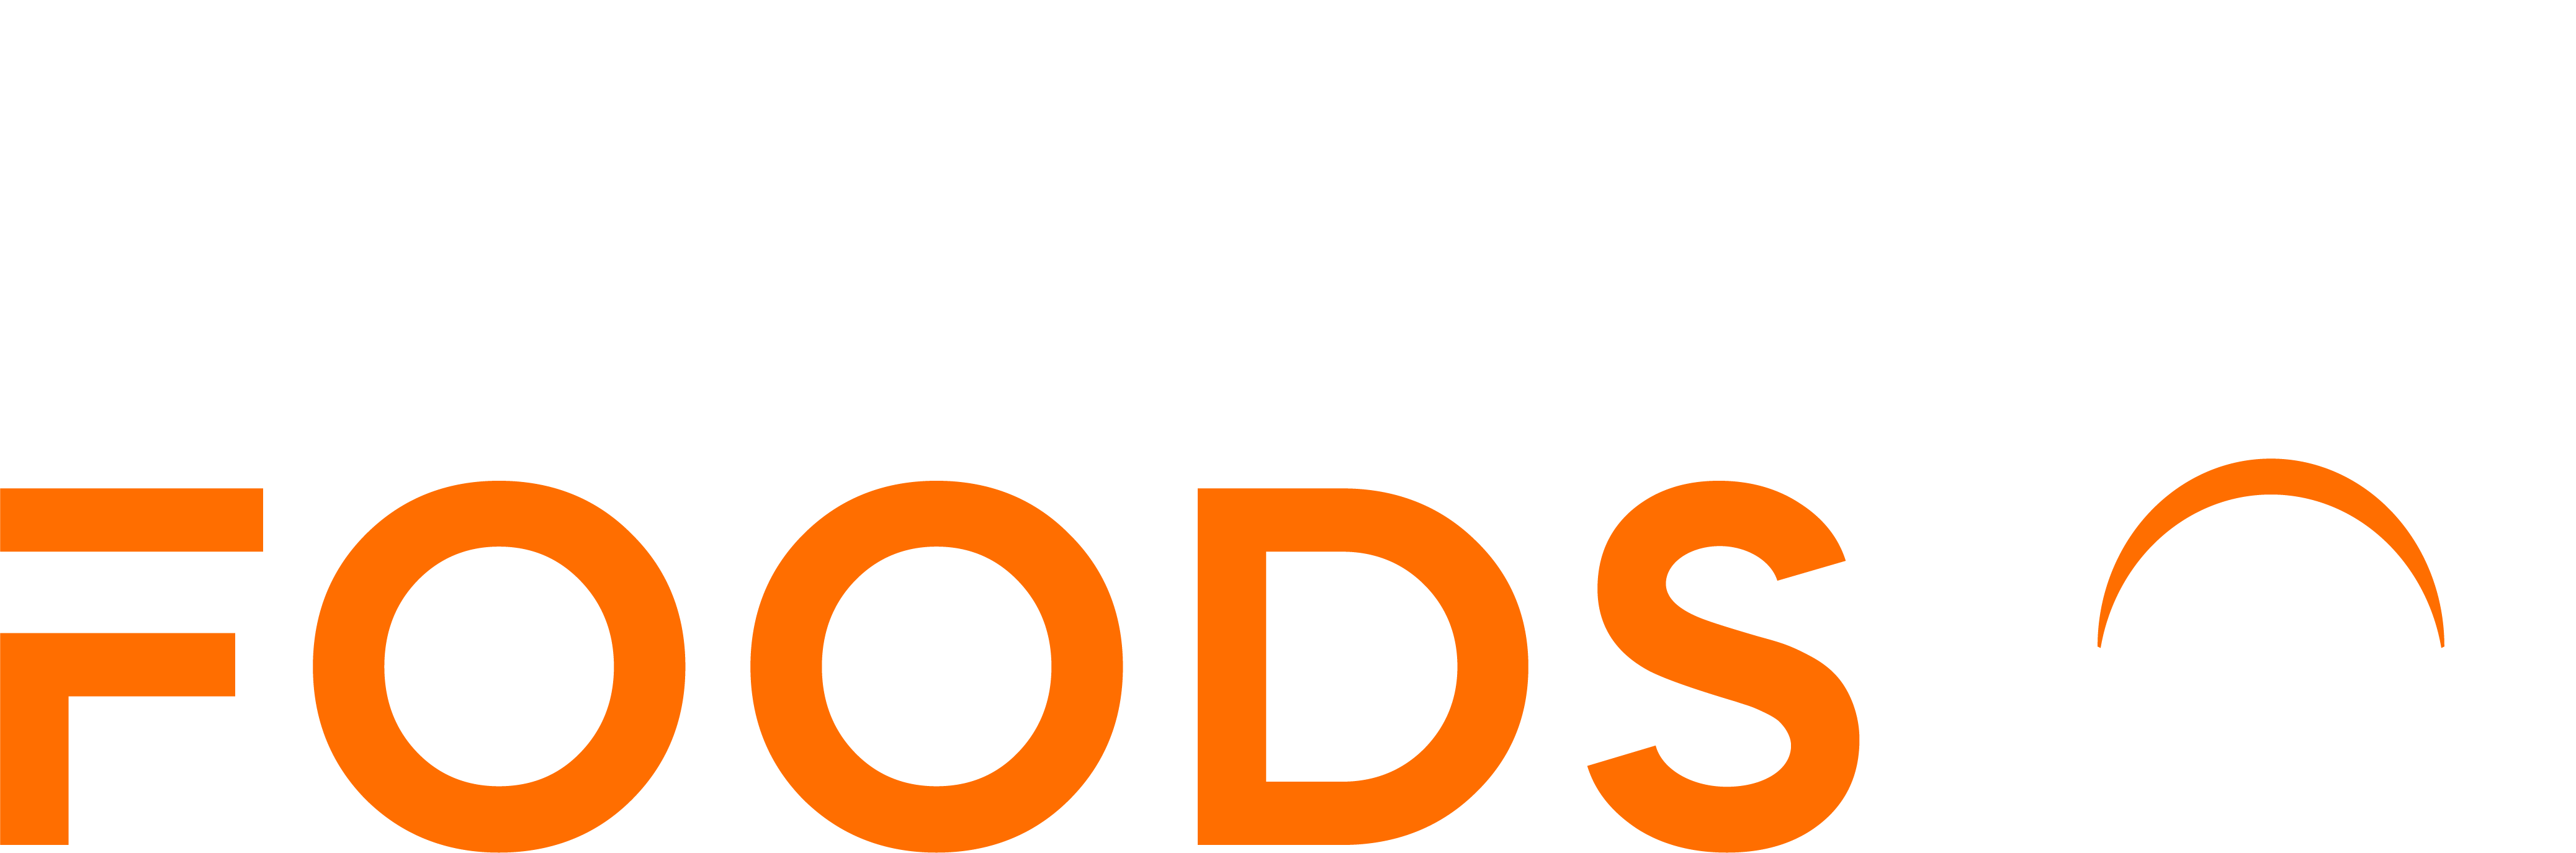 Fascin8foods logo reverse